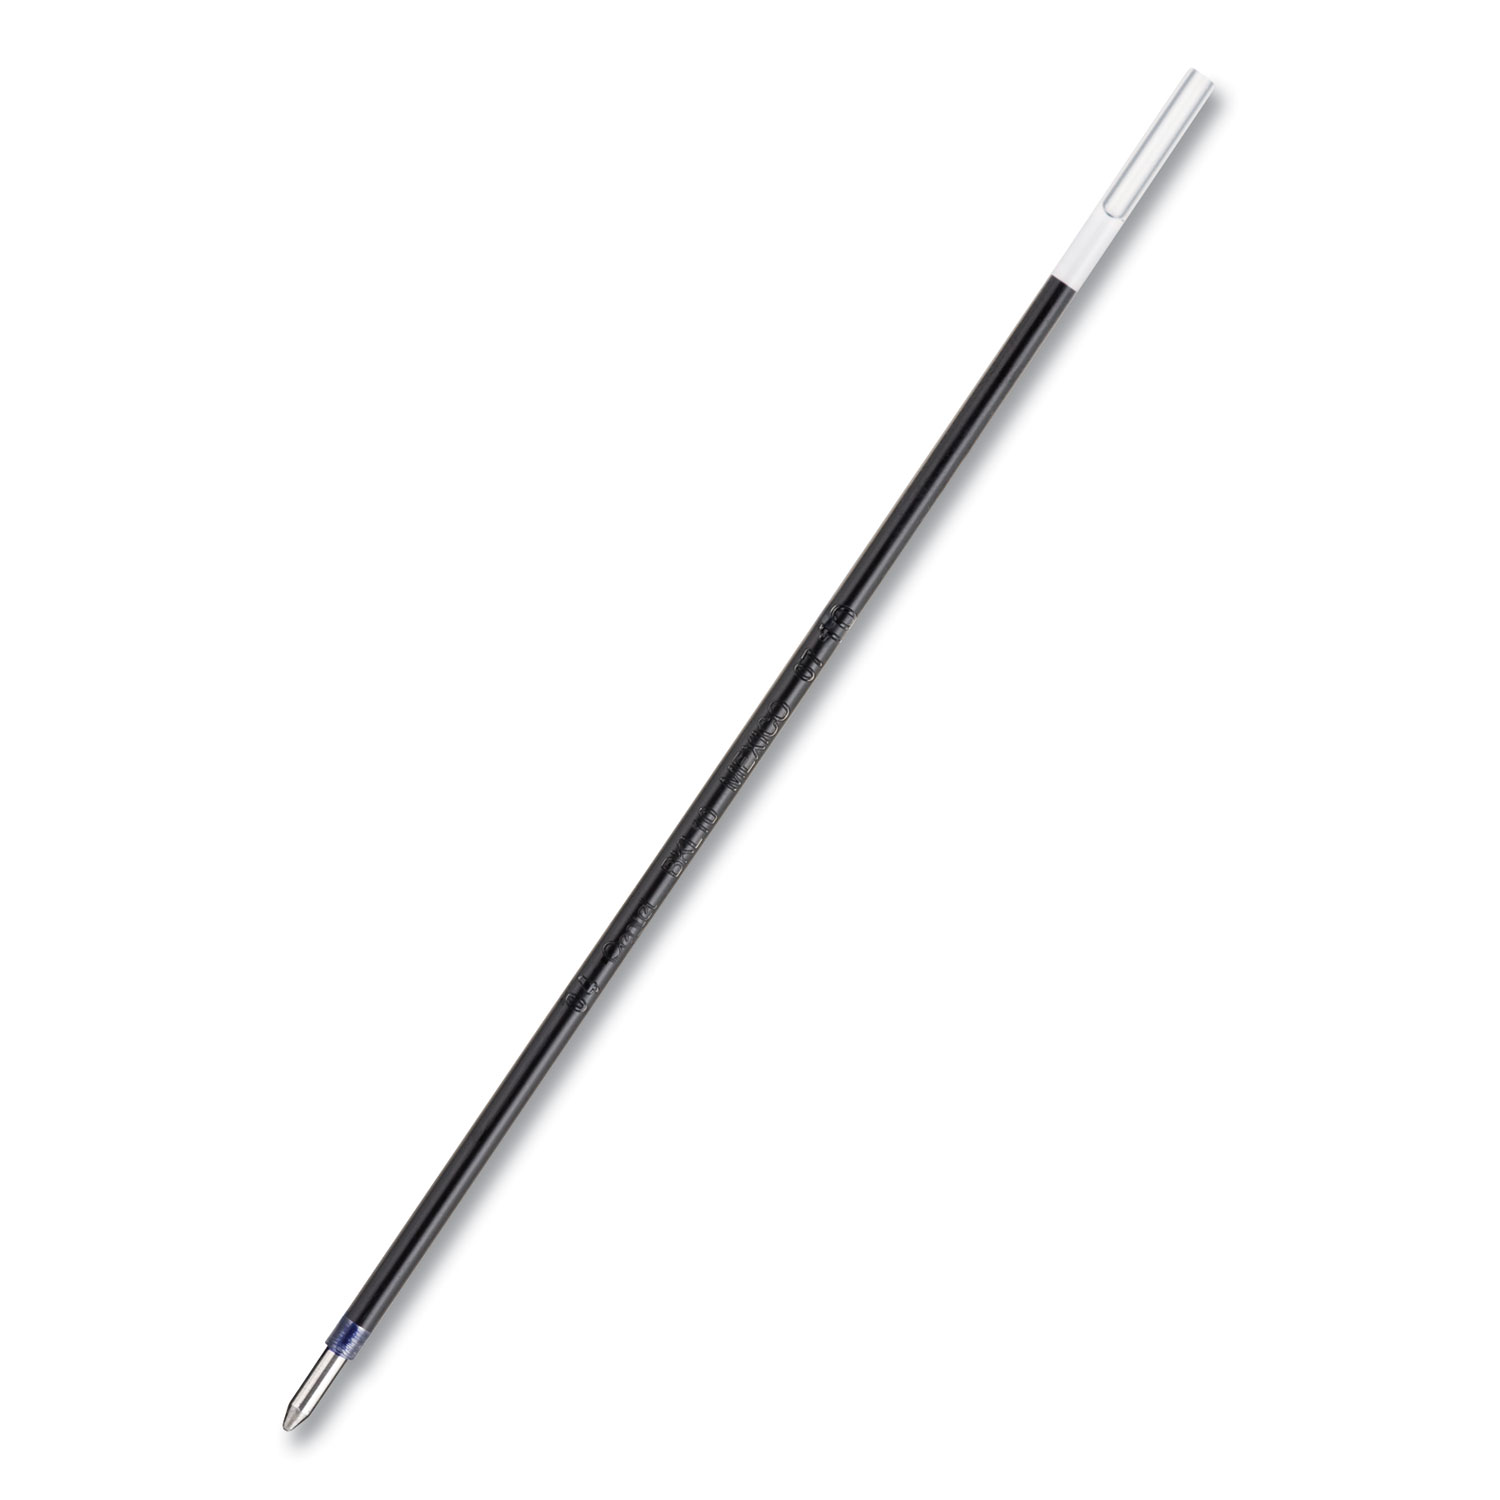  Pentel BKL10C Refill for Pentel R.S.V.P. Ballpoint Pens, Medium Point, Blue Ink, 2/Pack (PENBKL10C) 